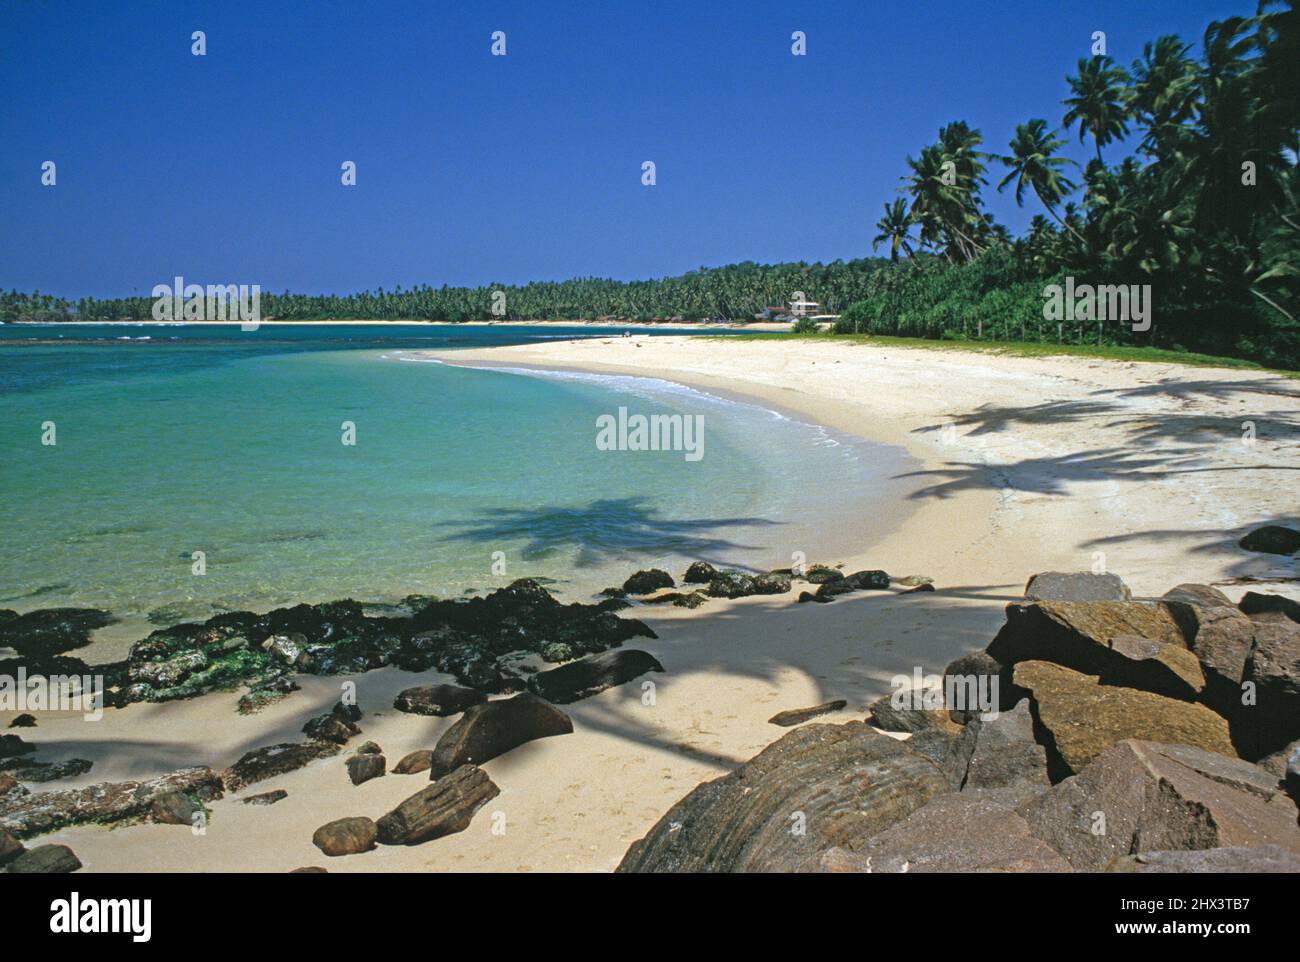 Sri Lanka. Unawatuna. Escena de playa. Foto de stock